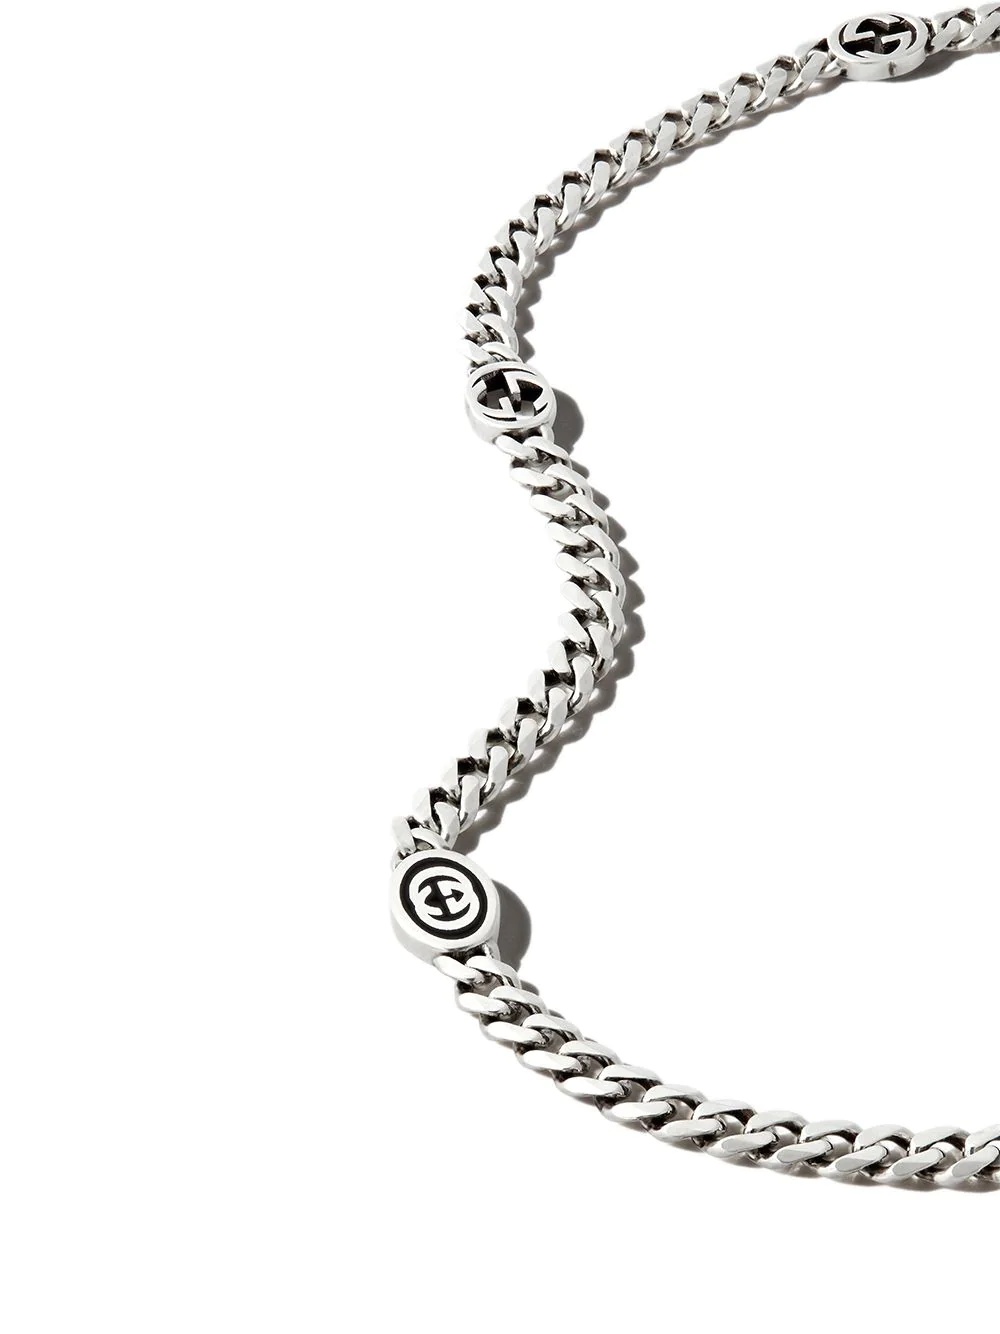 Interlocking G station chain necklace - 3